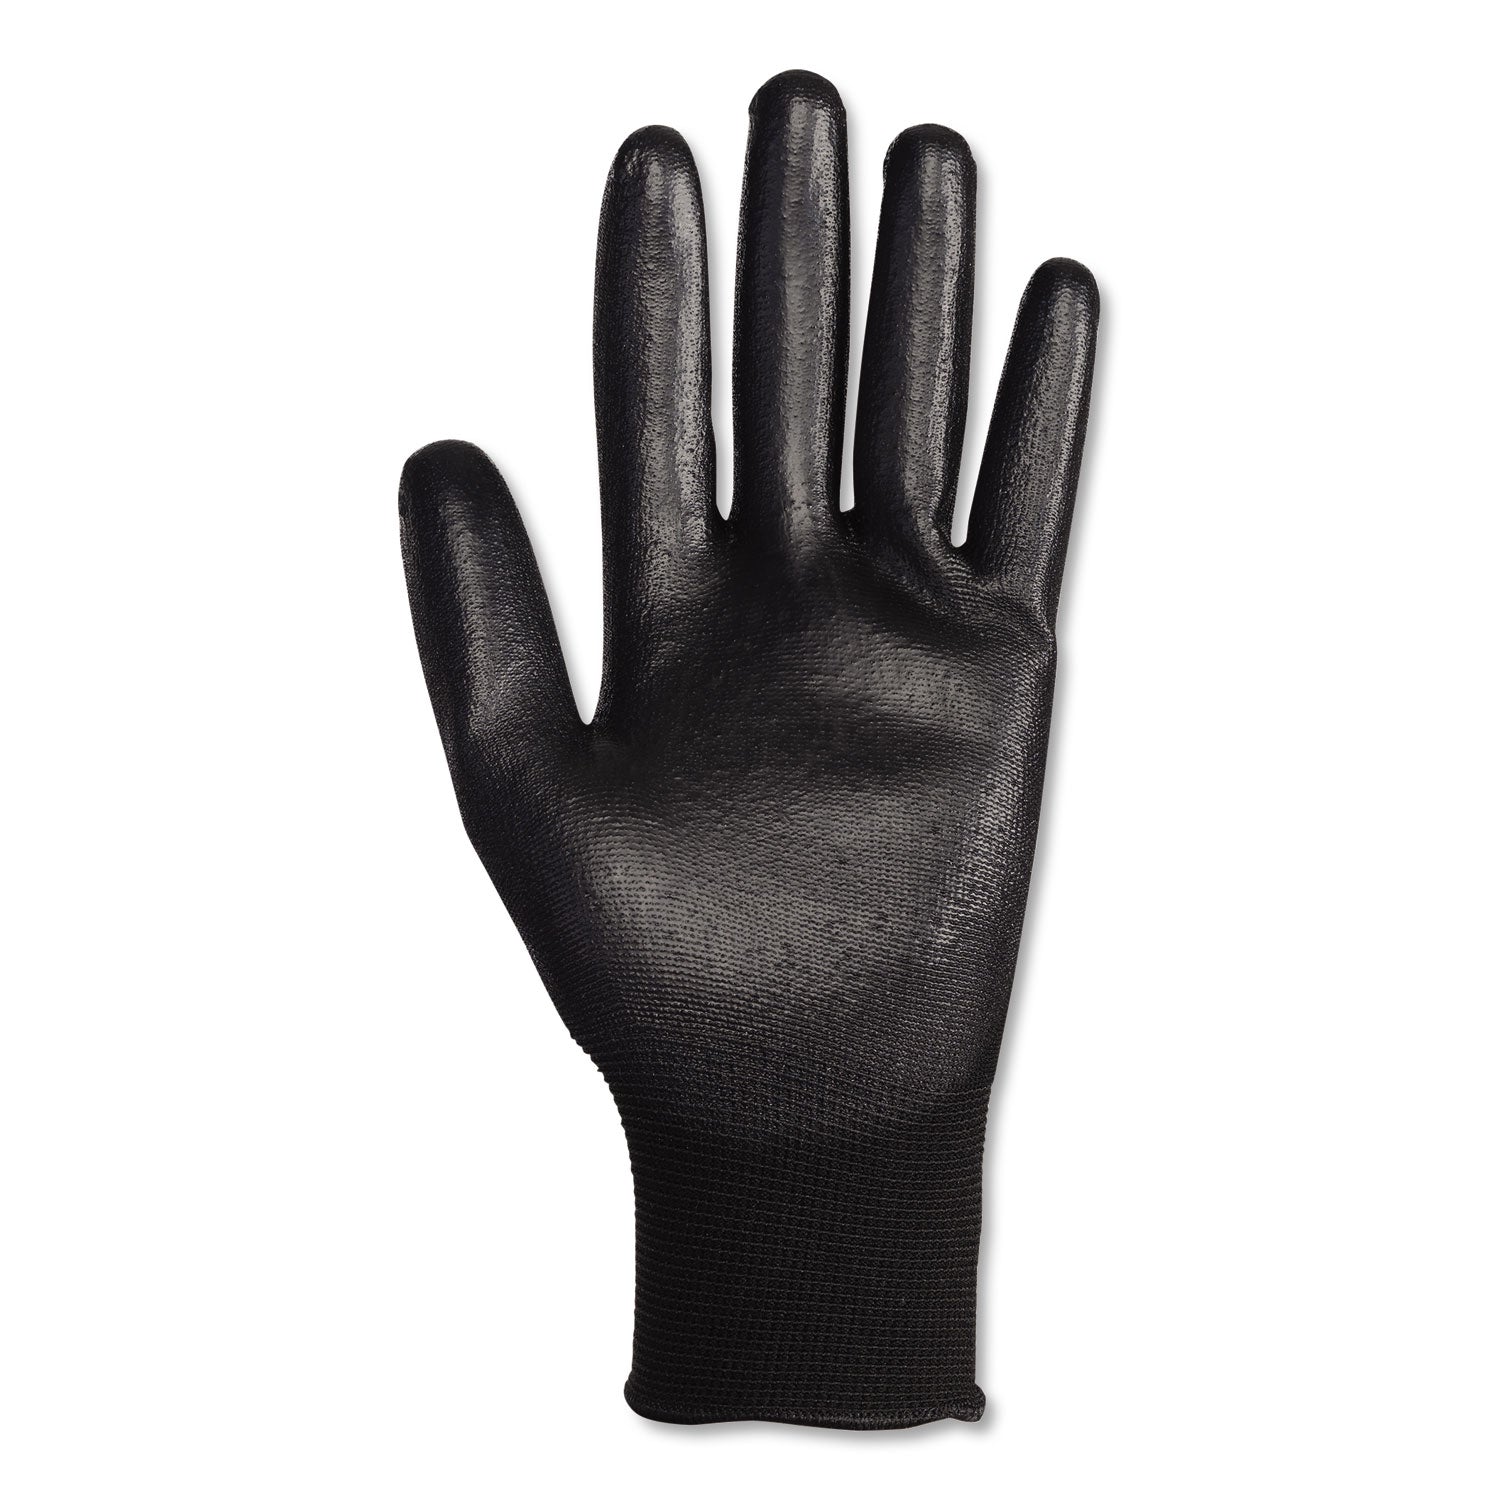 g40-polyurethane-coated-gloves-black-2x-large-60-carton_kcc13841 - 2